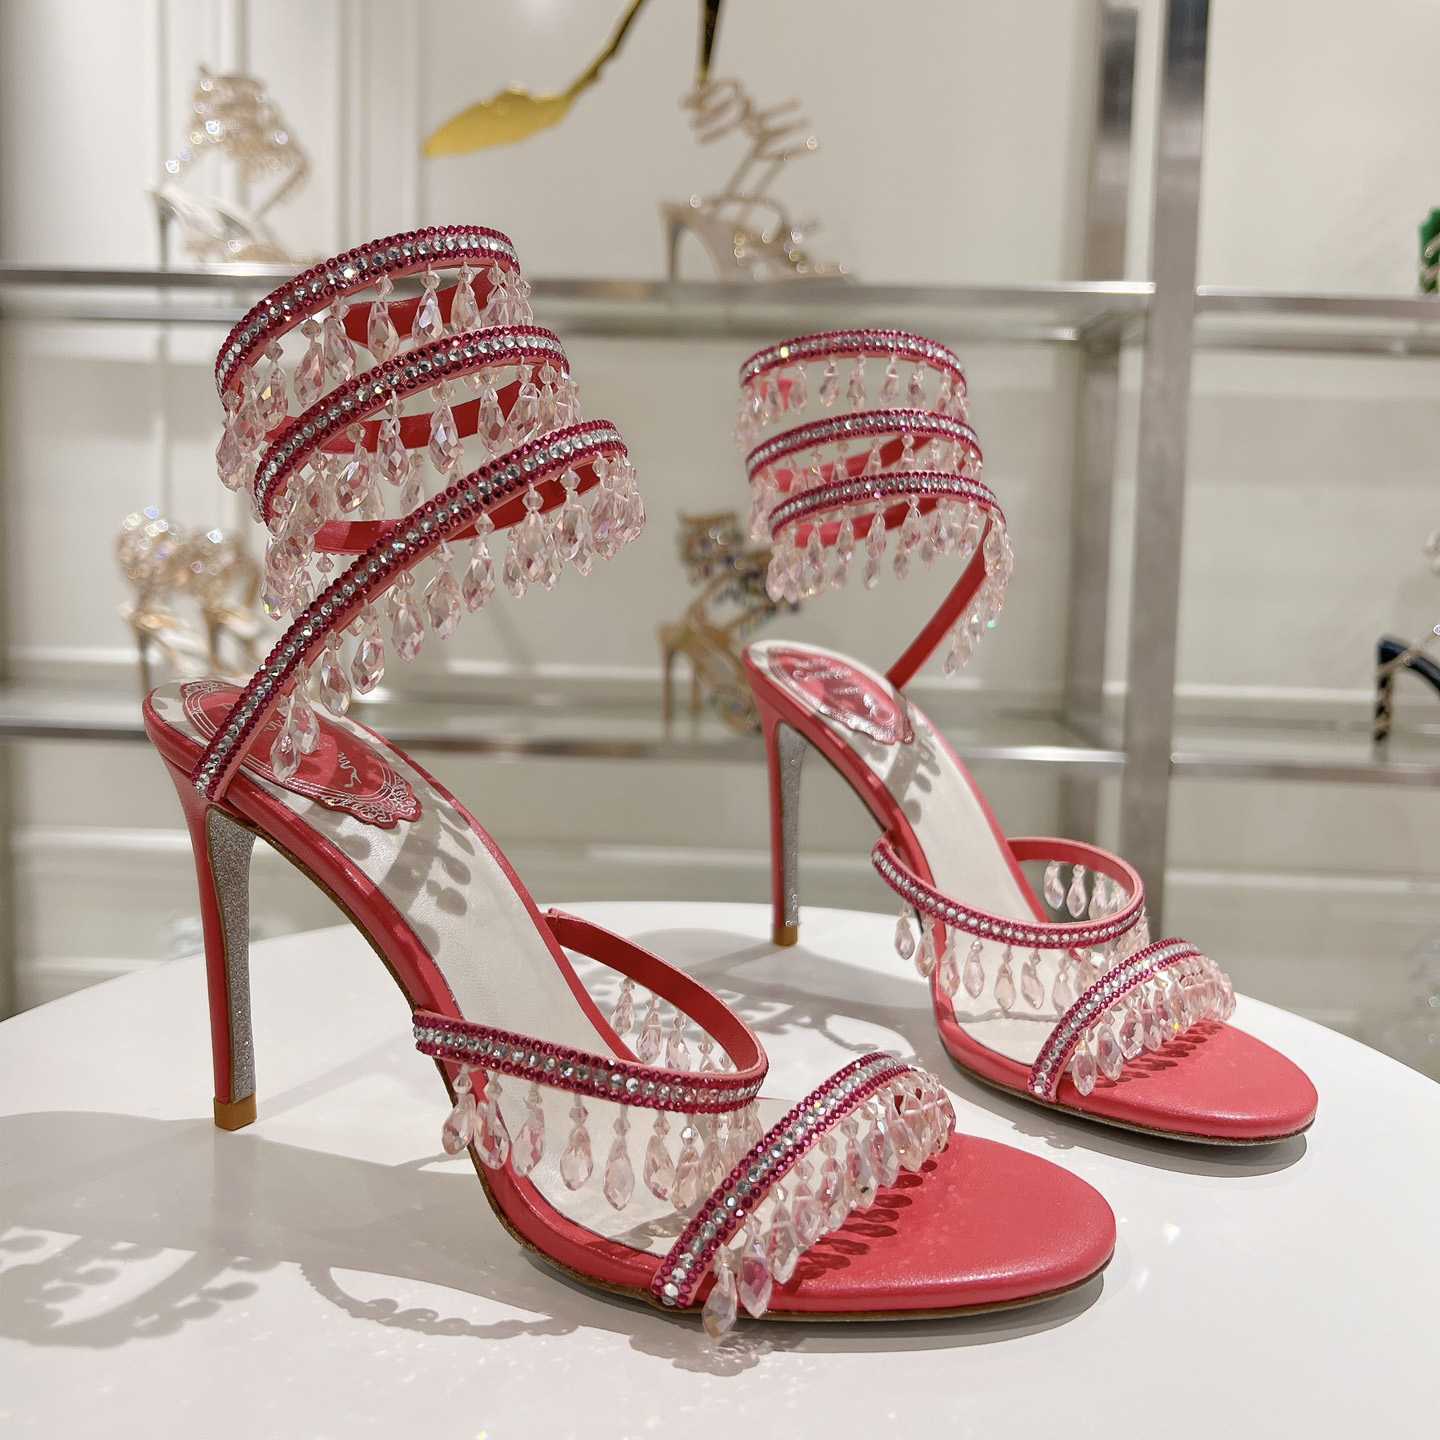 Rene Caovilla Chandelier 95mm Crystal-embellished Sandals - everydesigner